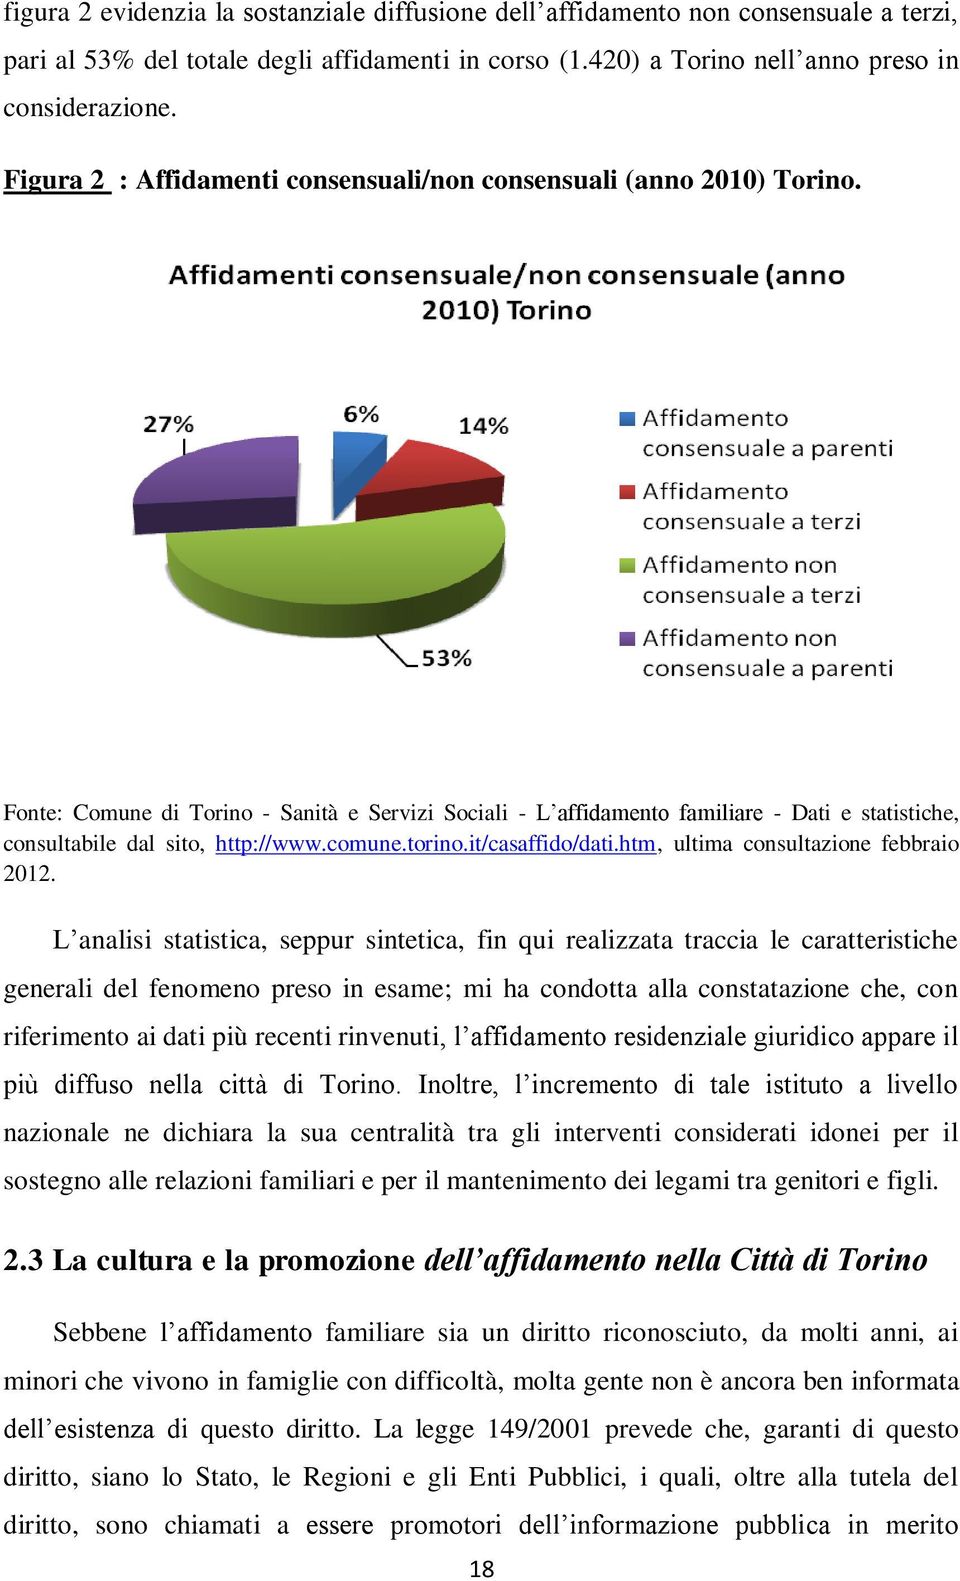 Fonte: Comune di Torino - Sanità e Servizi Sociali - L affidamento familiare - Dati e statistiche, consultabile dal sito, http://www.comune.torino.it/casaffido/dati.